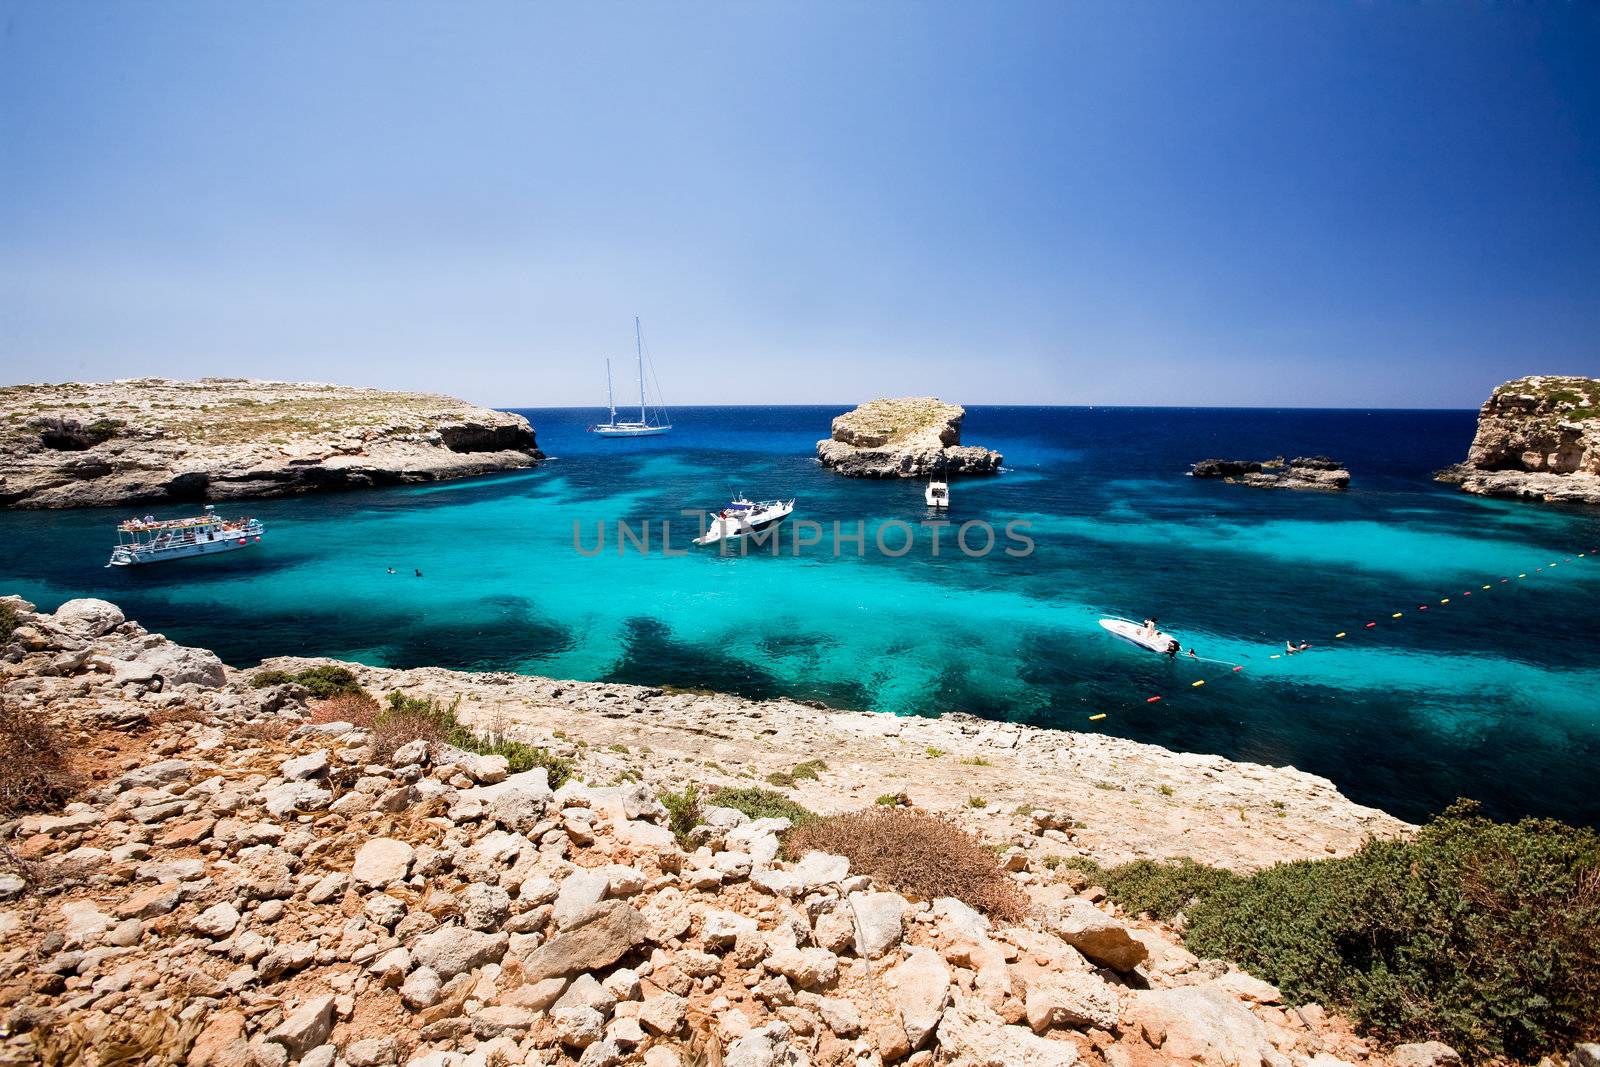 Blug lagoon on a warm summer day on Comino Island, Malta